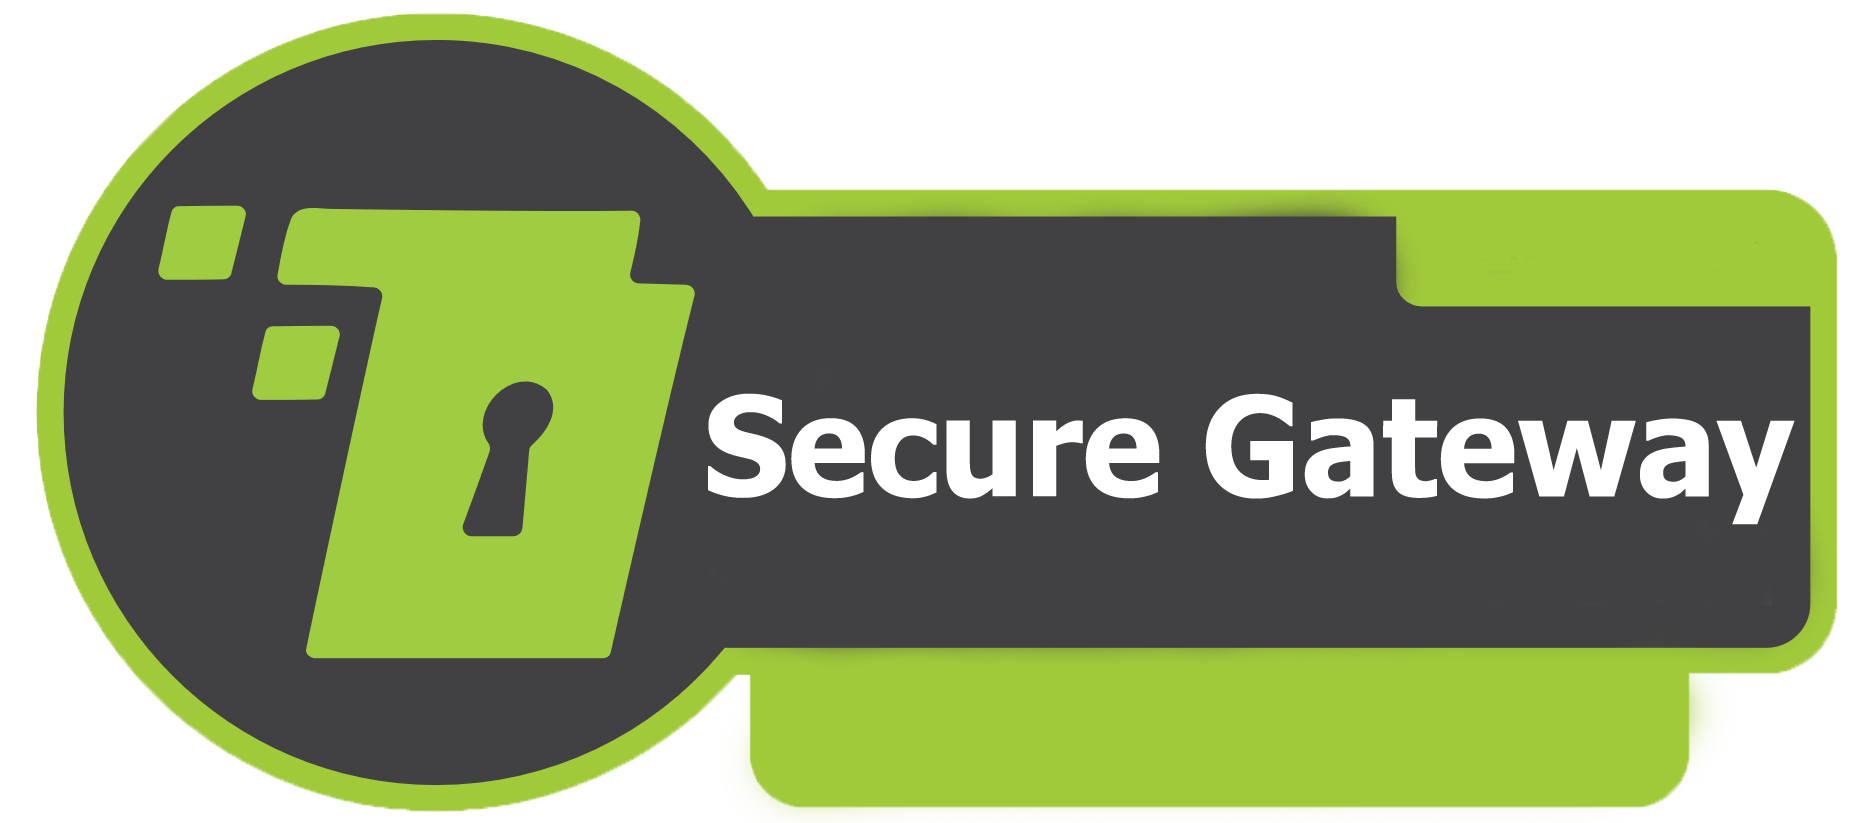 securegateway1.png (124 KB)